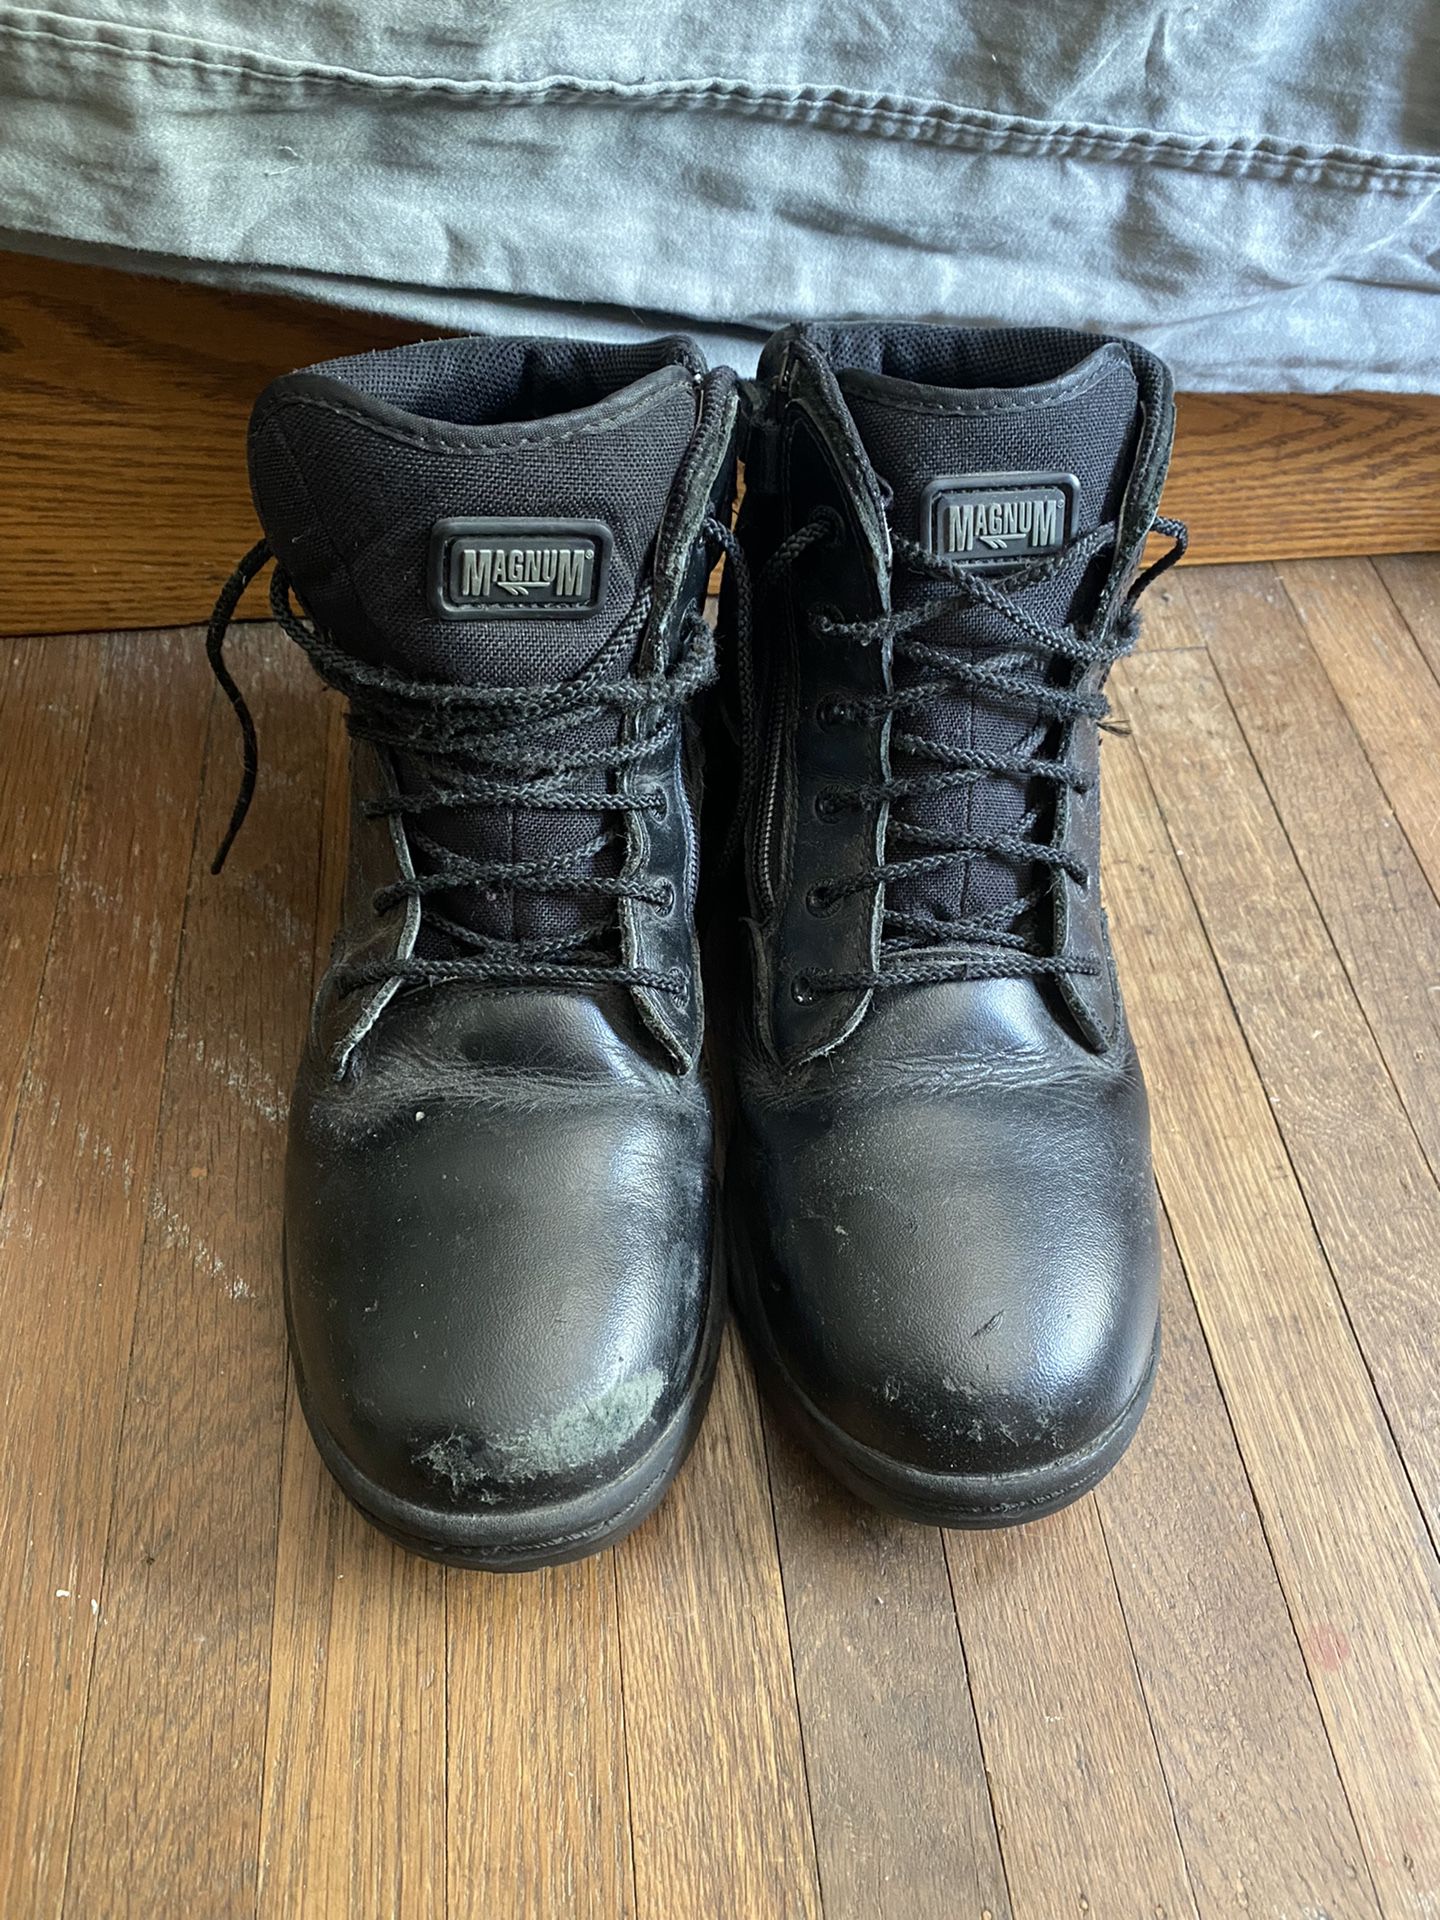 Used Steel Toe Boots